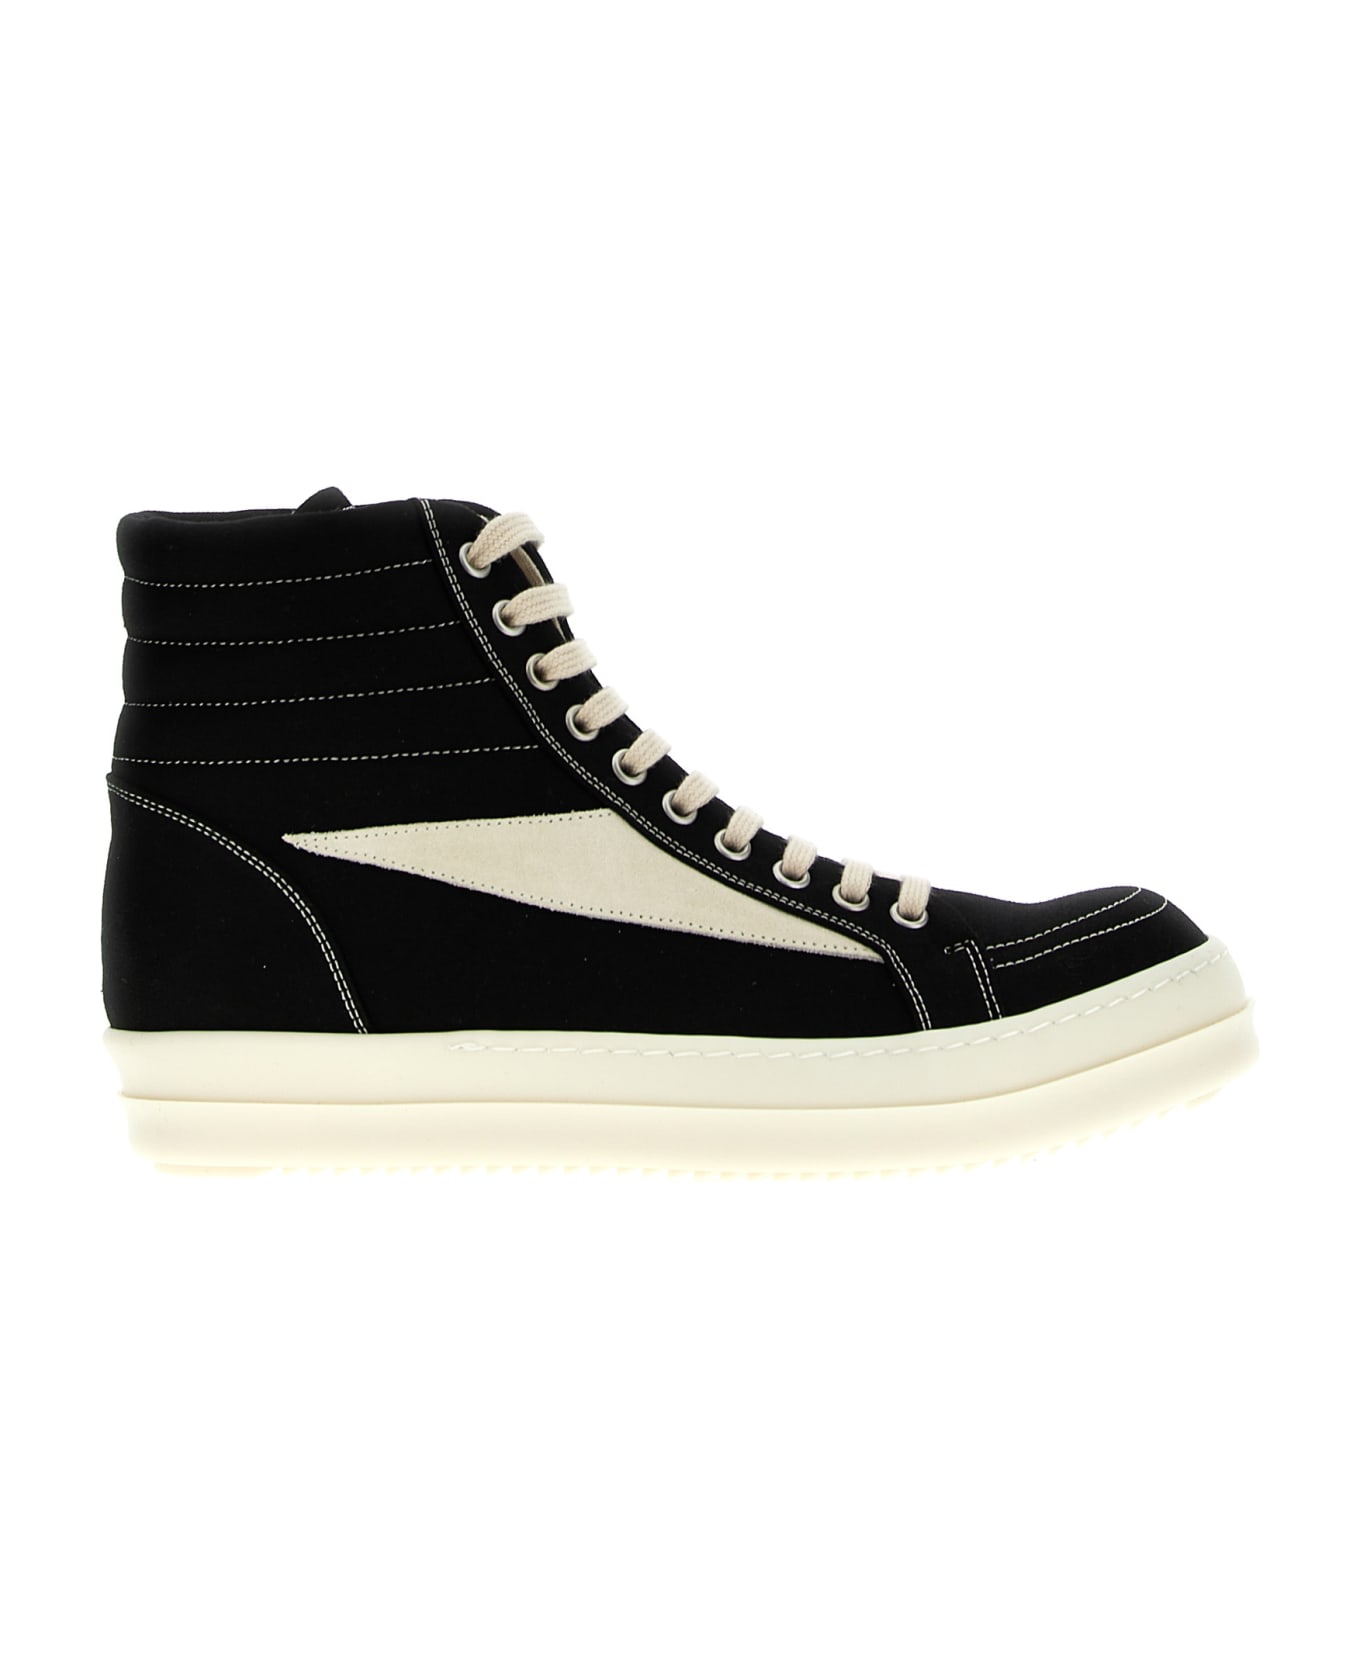 DRKSHDW 'vintage High Sneaks' Sneakers - White/Black スニーカー